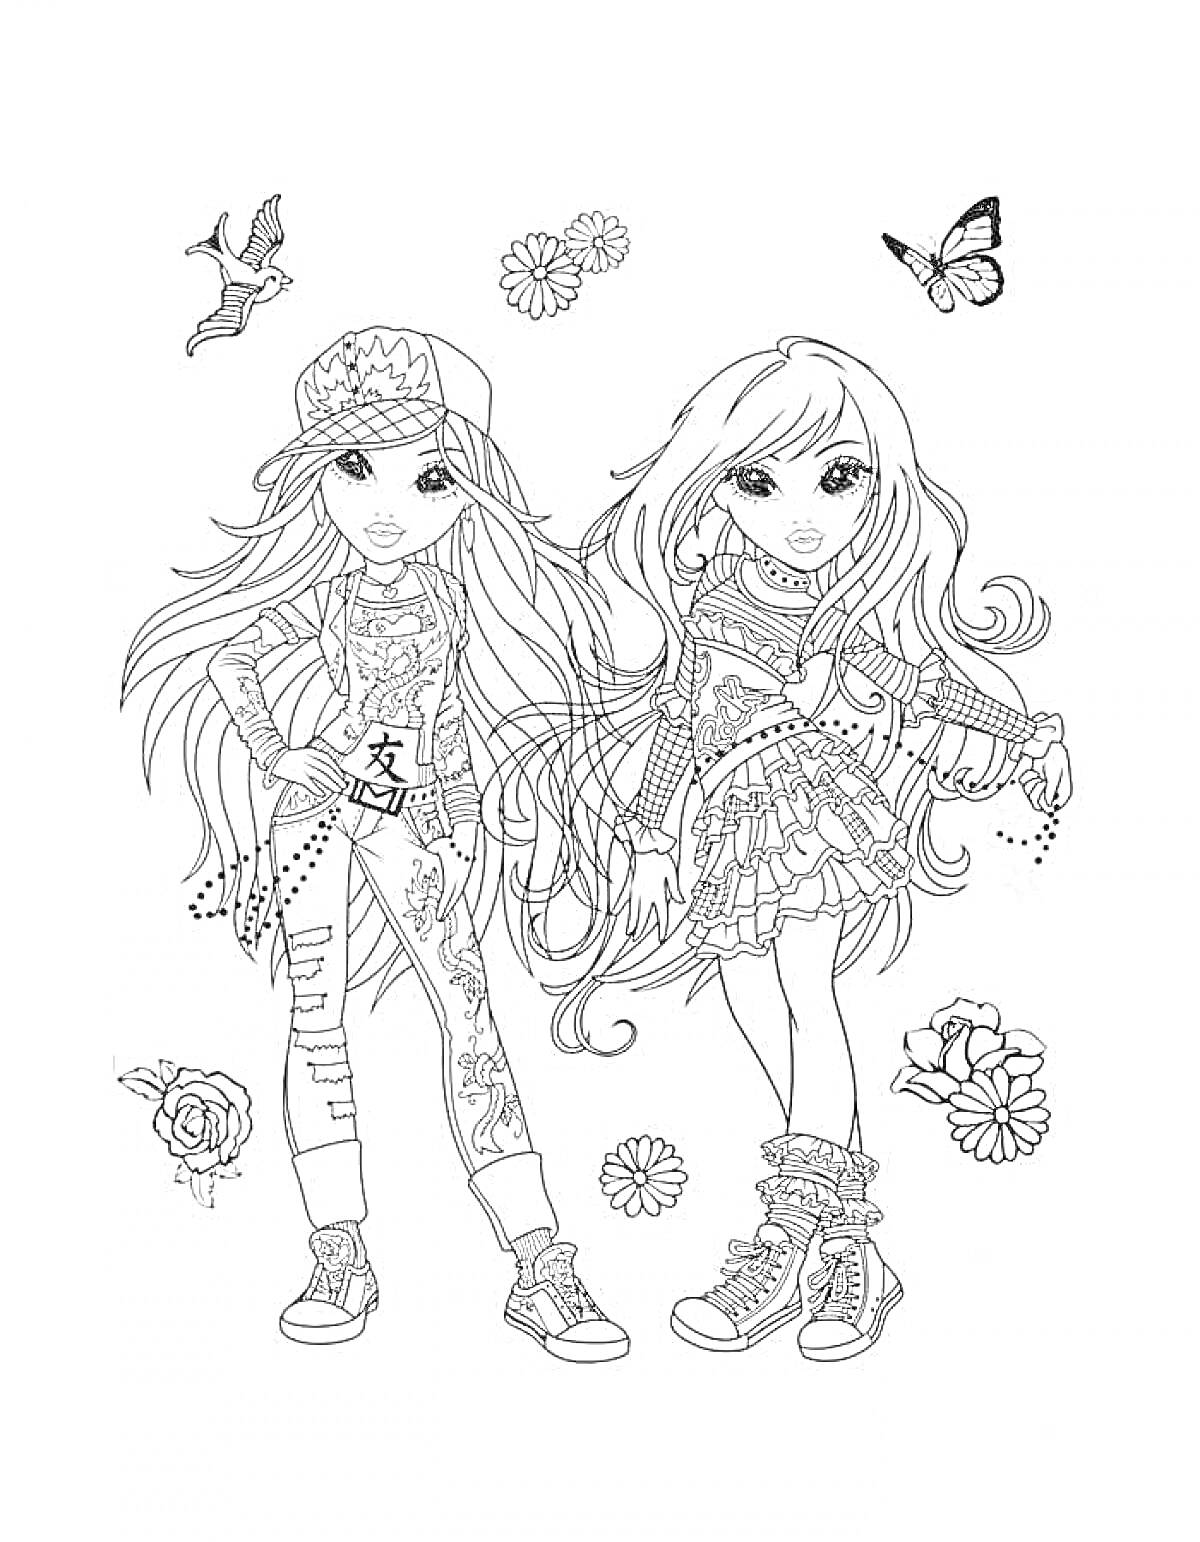 Раскраска Две девочки в крутой одежде с длинными волосами, одна в кепке, вокруг бабочки и цветы